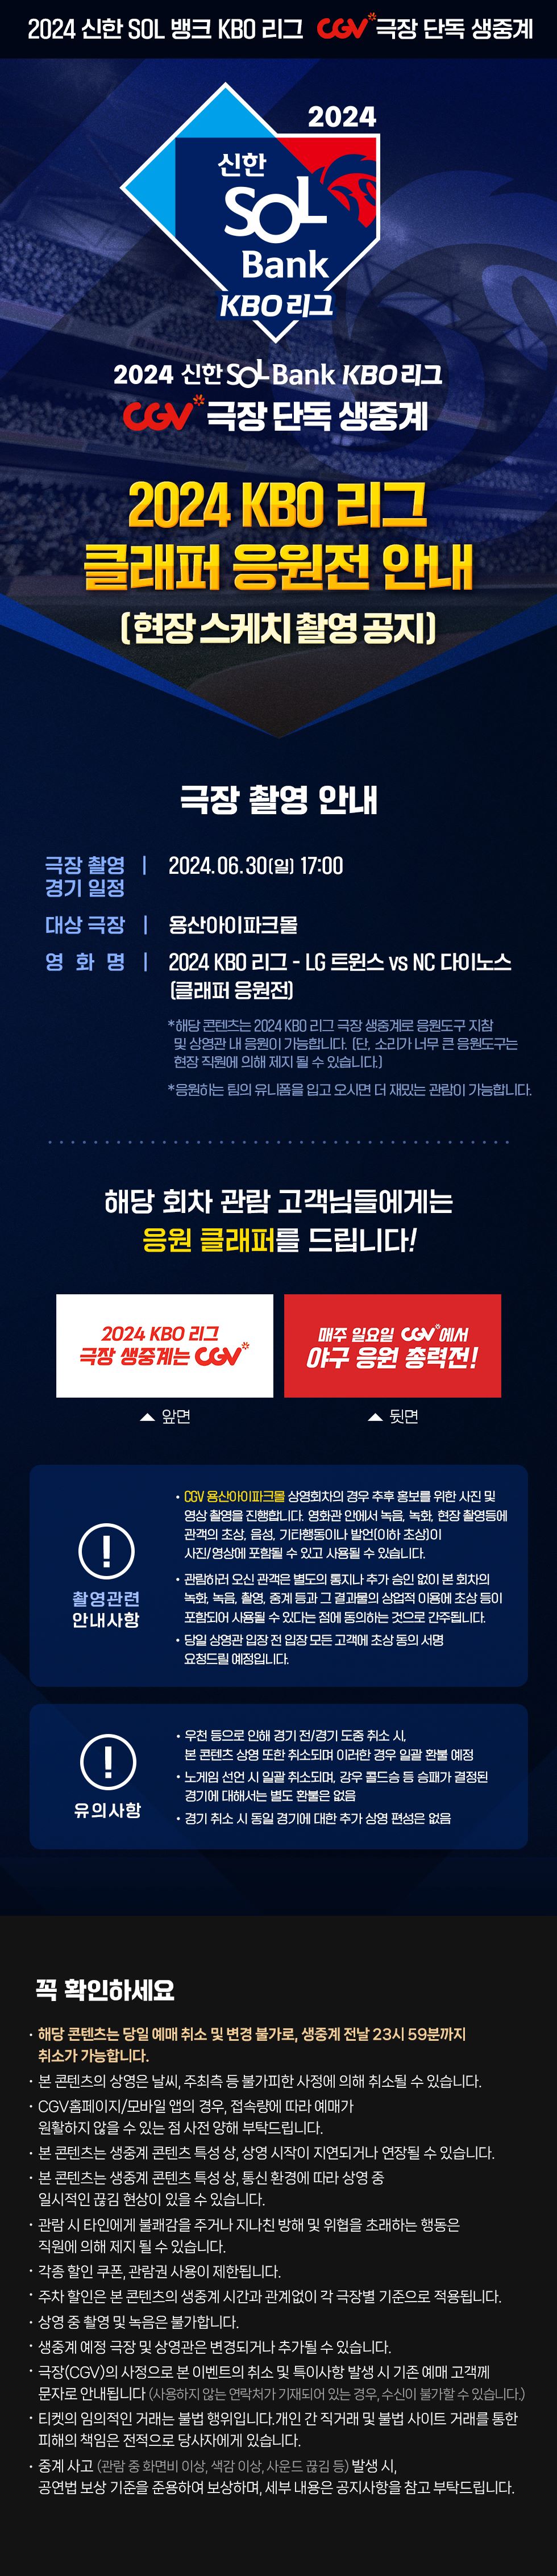 제휴/할인 2024 KBO 리그 극장 생중계
 6/30(일) 클래퍼 응원전